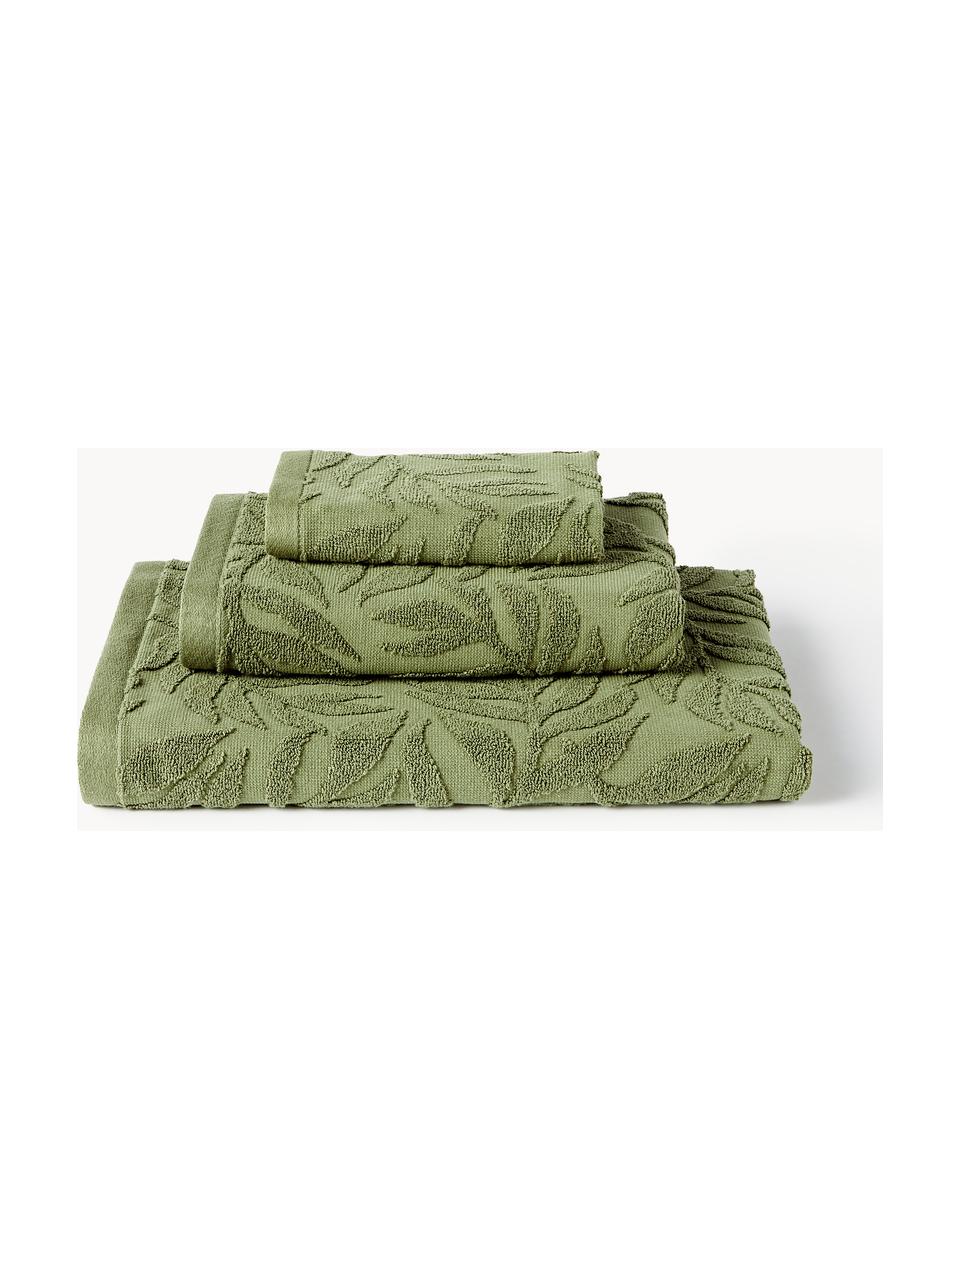 Lot de serviettes de bain en coton Leaf, set de tailles variées, Vert foncé, 4 éléments (2 serviettes de toilette et 2 draps de bain)